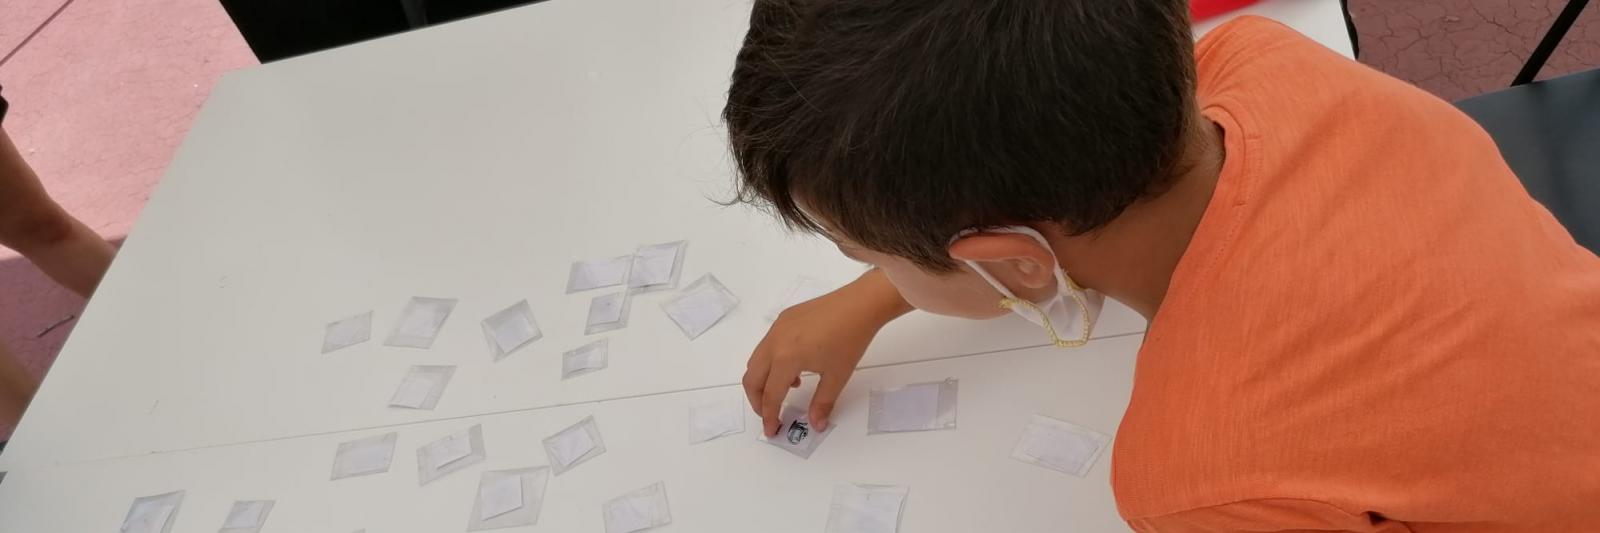 Un bambino gira le carte del memory appoggiate su un tavolo.